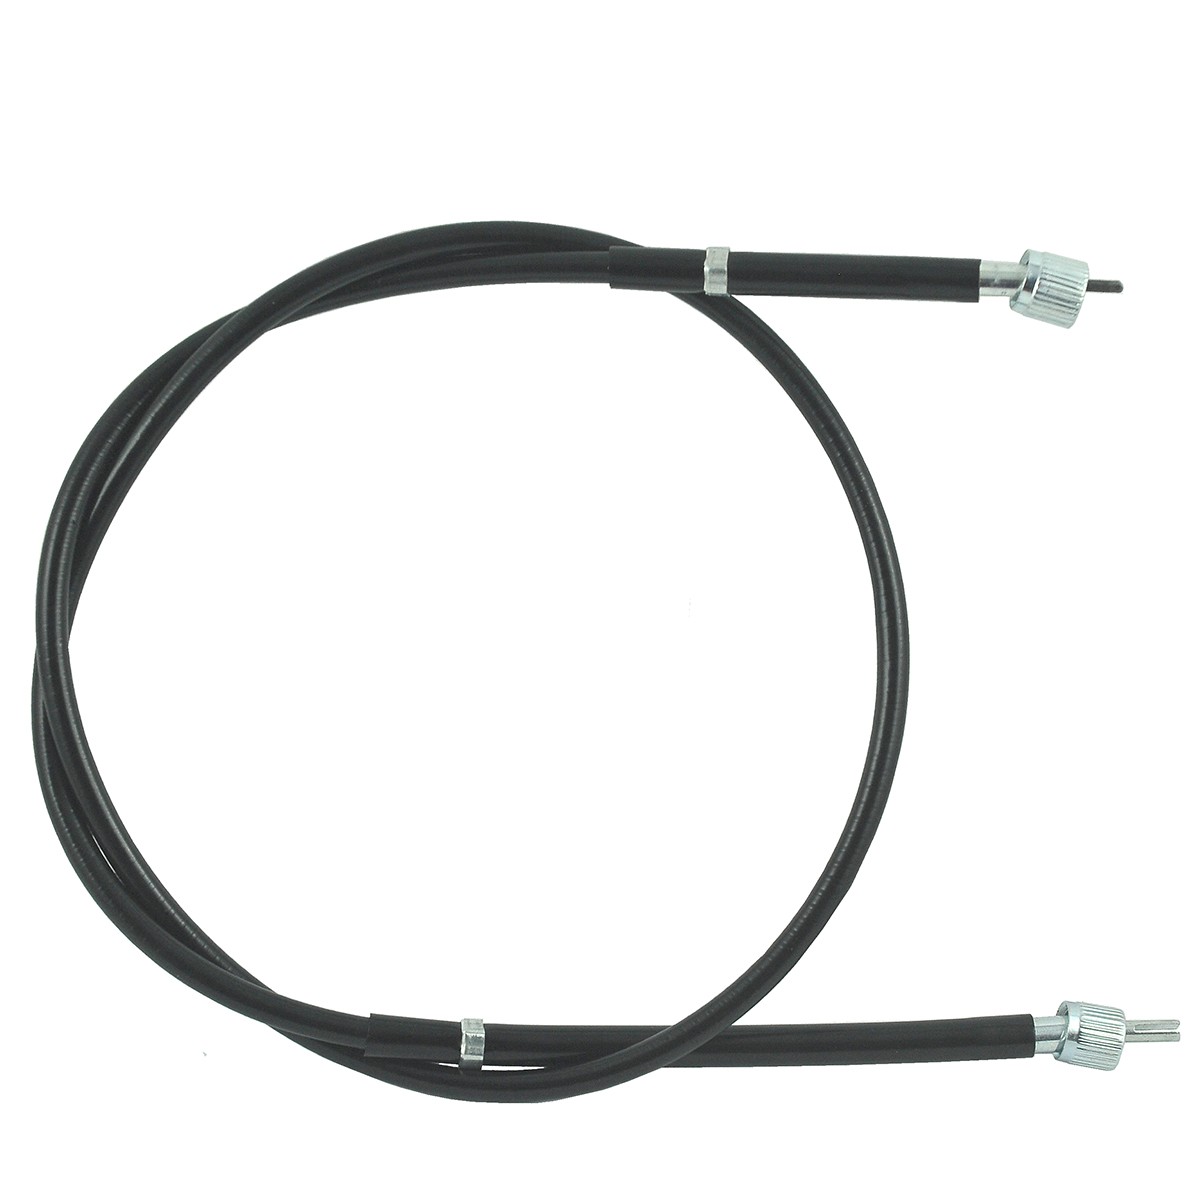 Metrový kabel / 1145 mm / Kubota L3600/L4200/L4310/L4508/L4610 / TA040-30610 / W9501-45001 / 5-25-123-14